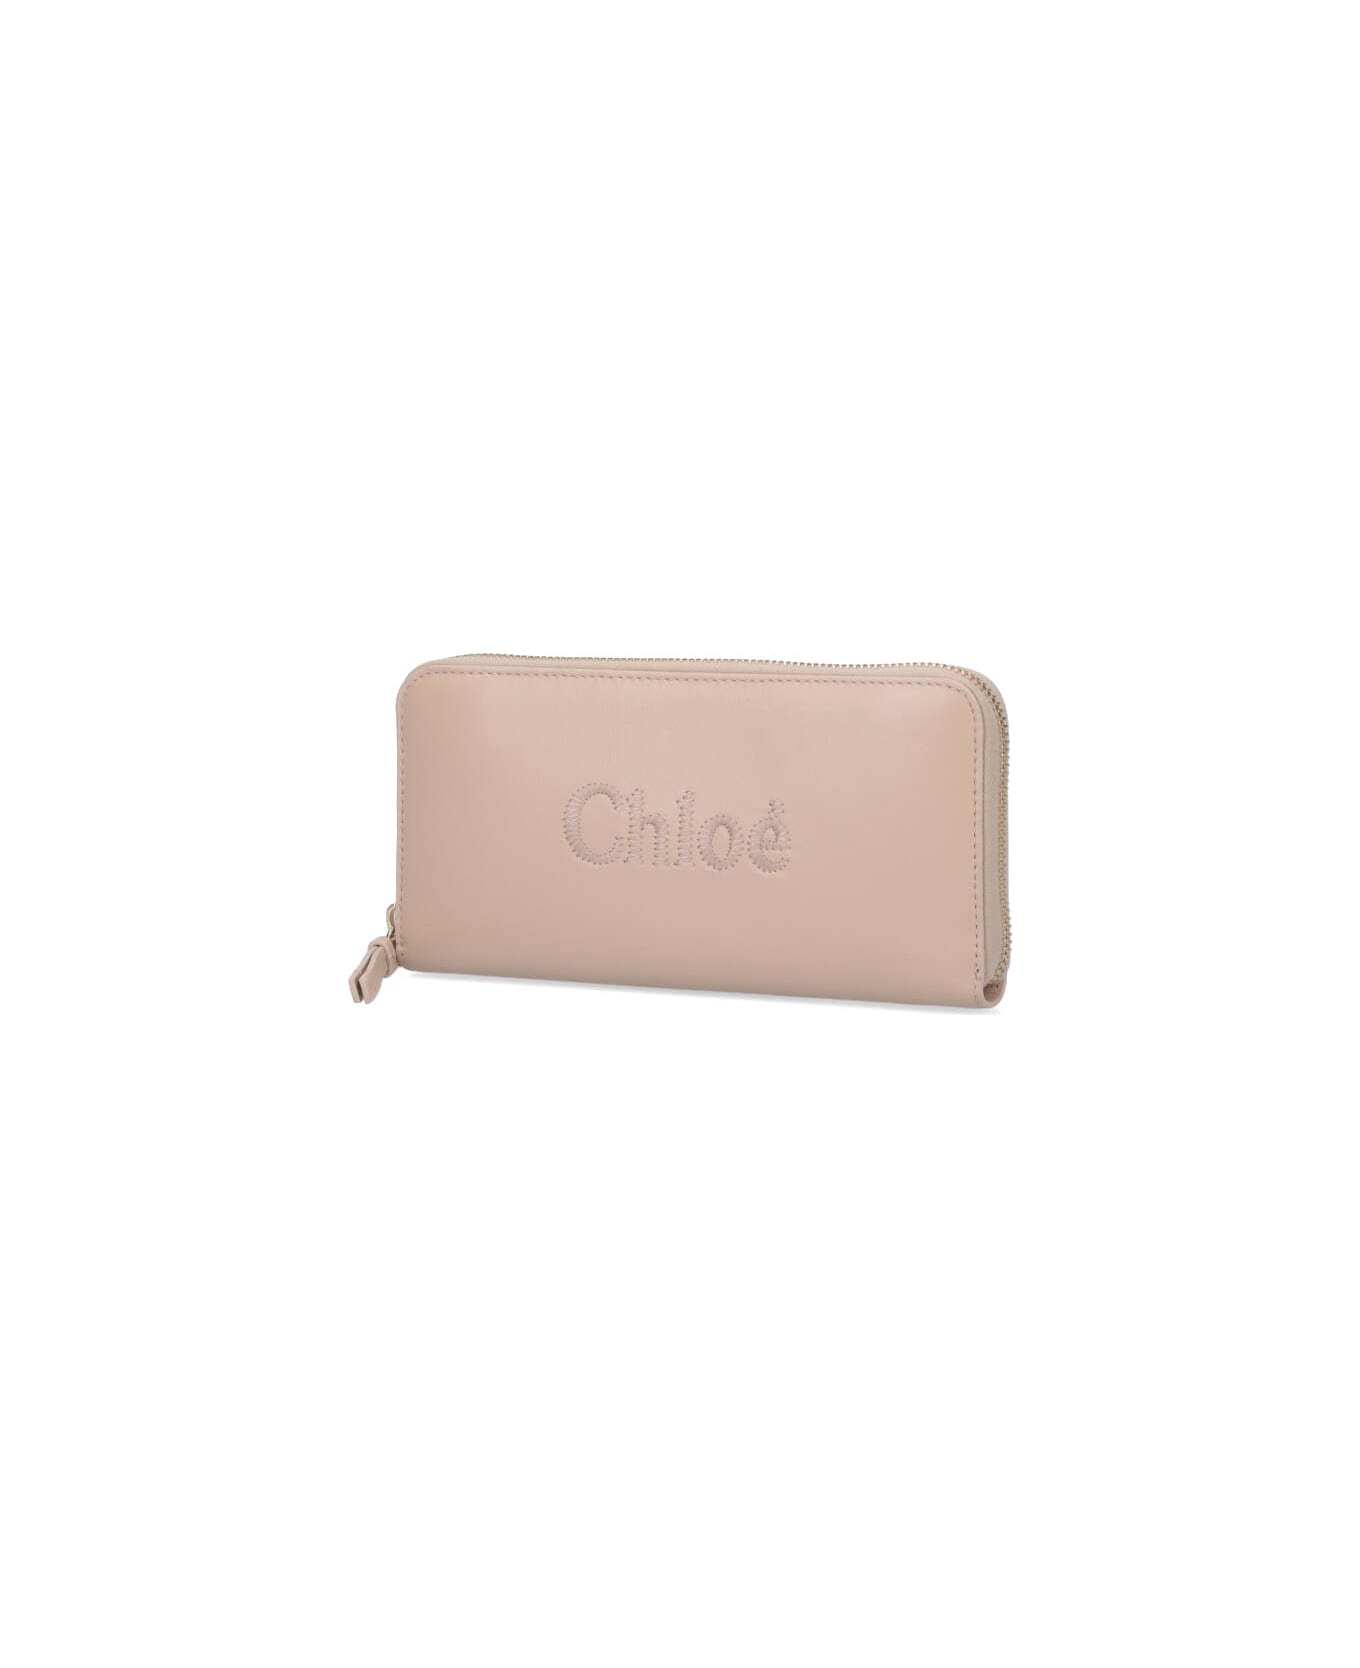 Chloé Leather Wallet - Beige 財布